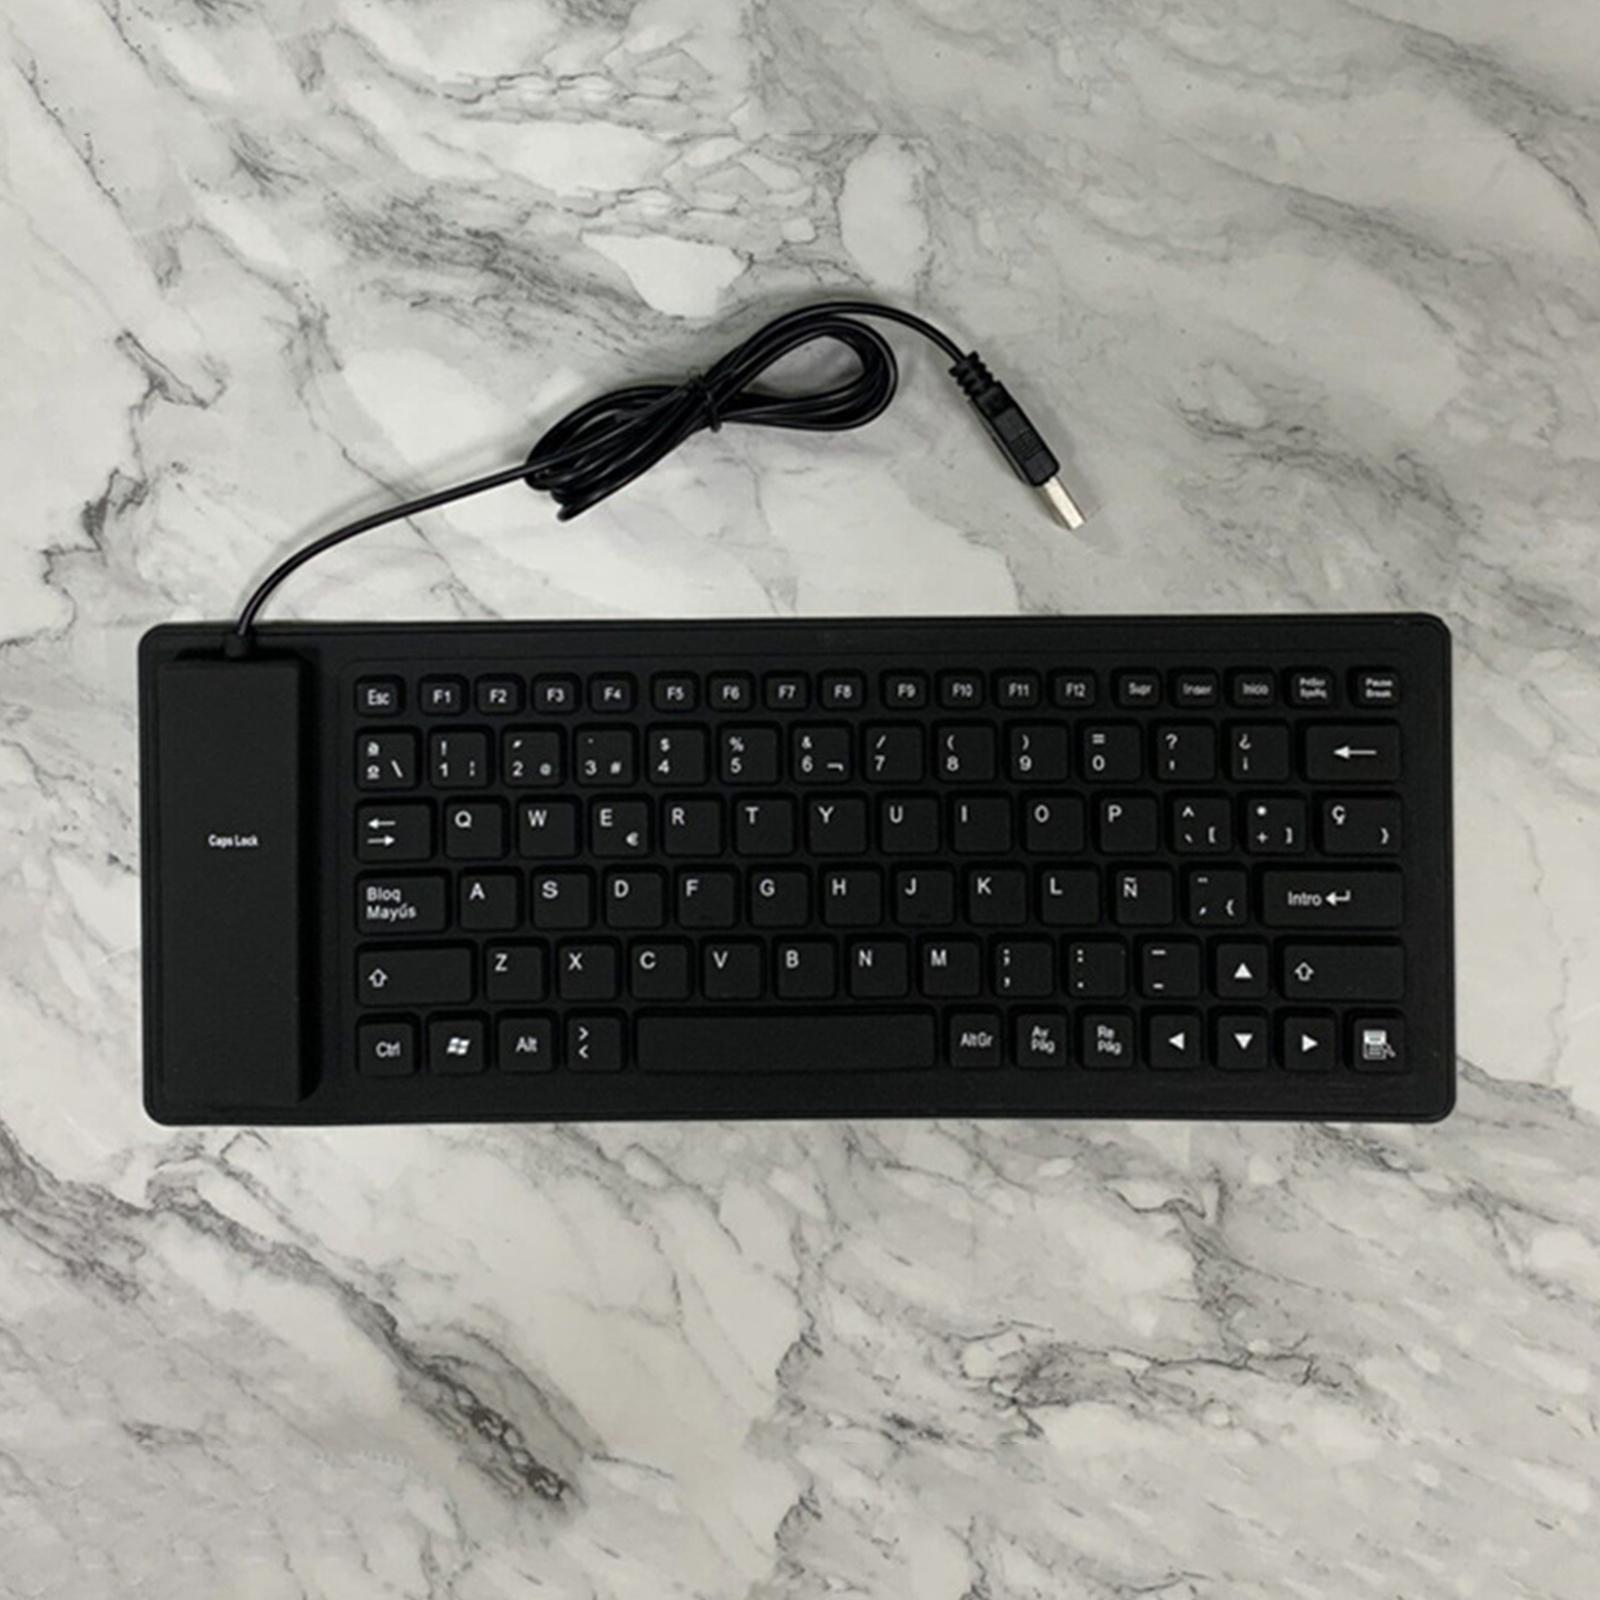 USB Foldable 84 Keys Spanish Keyboard Waterproof for Desktop Computer Laptop